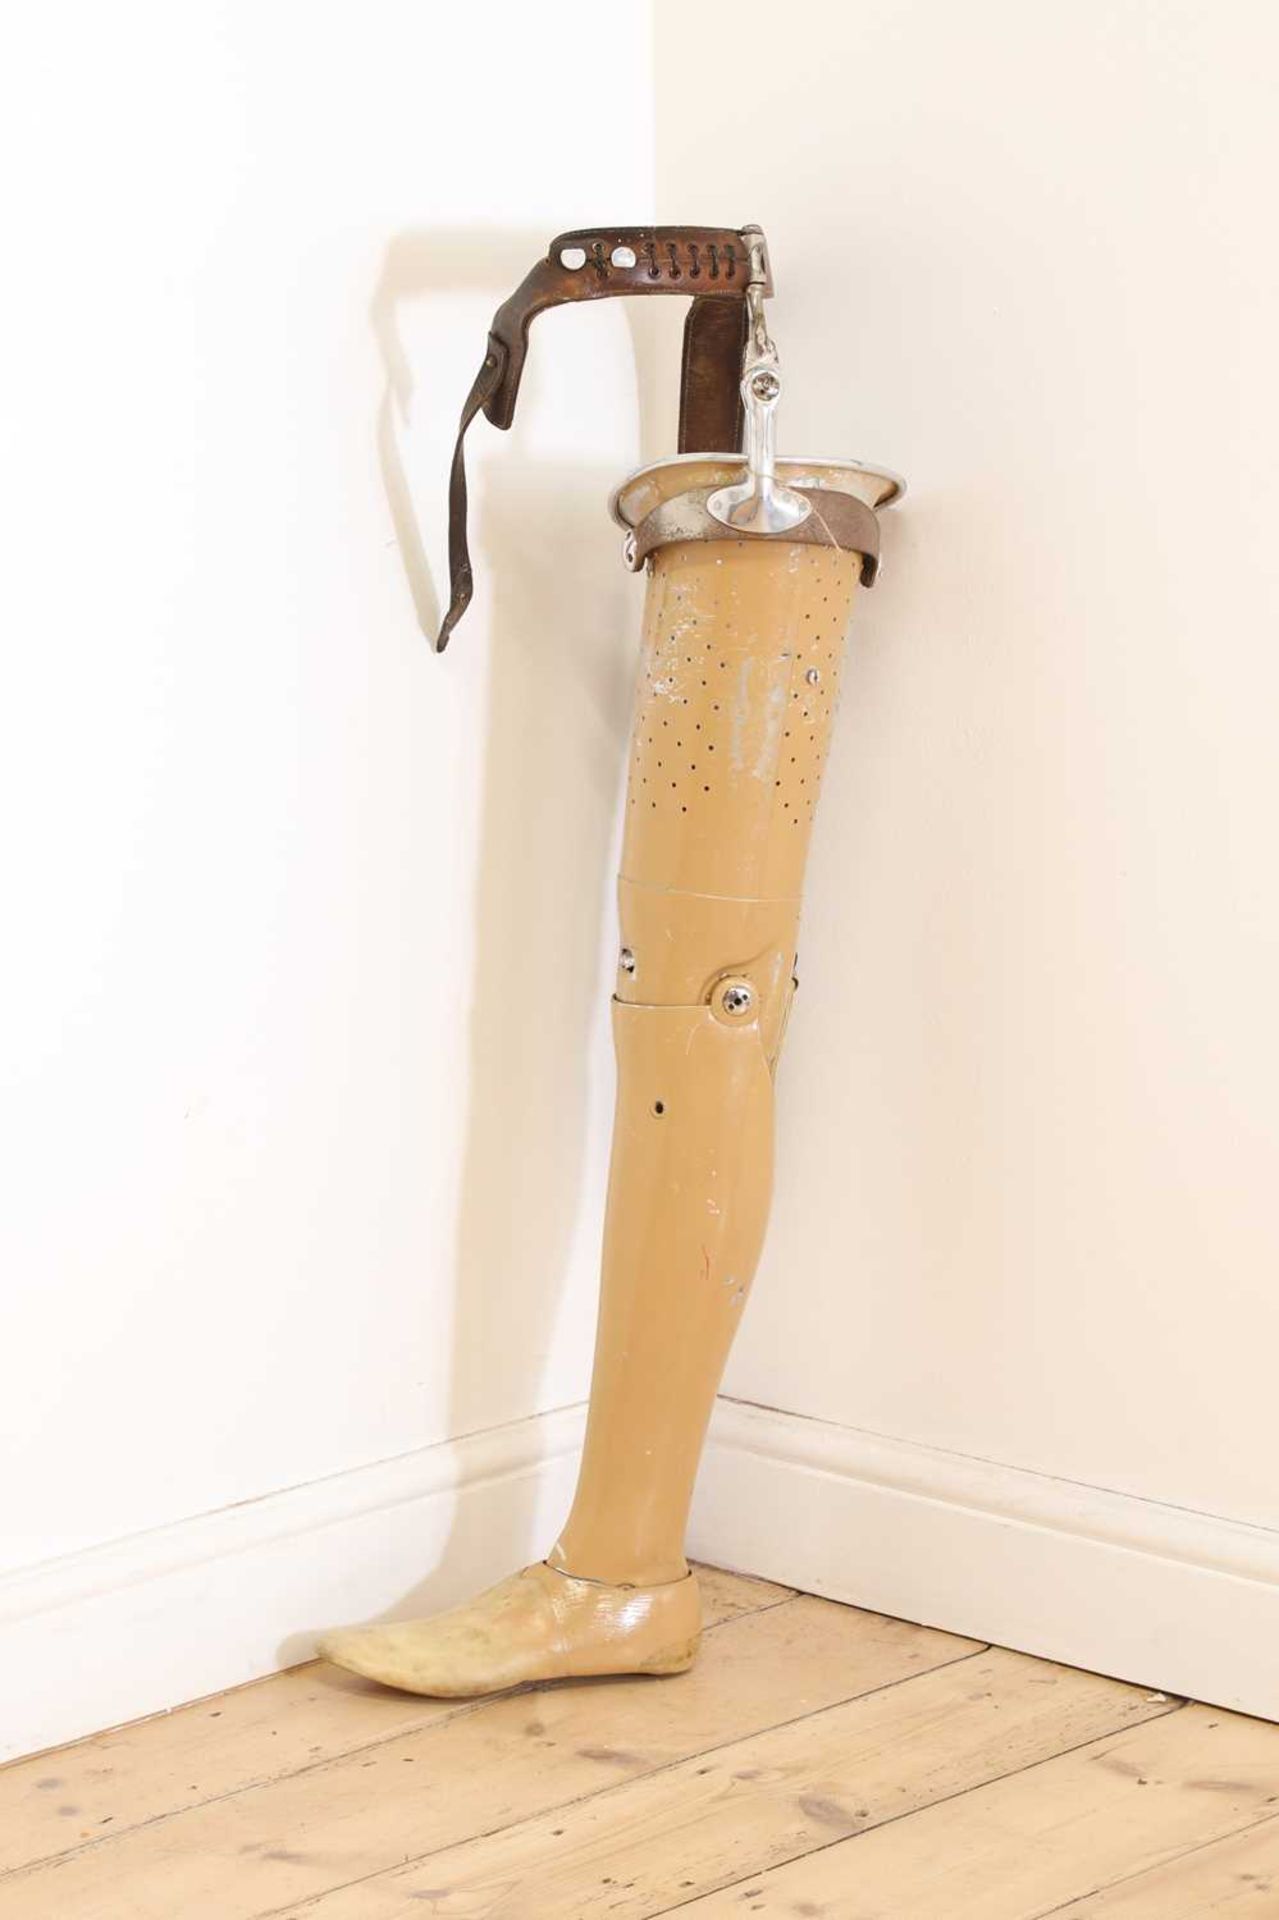 An aluminium prosthetic leg,